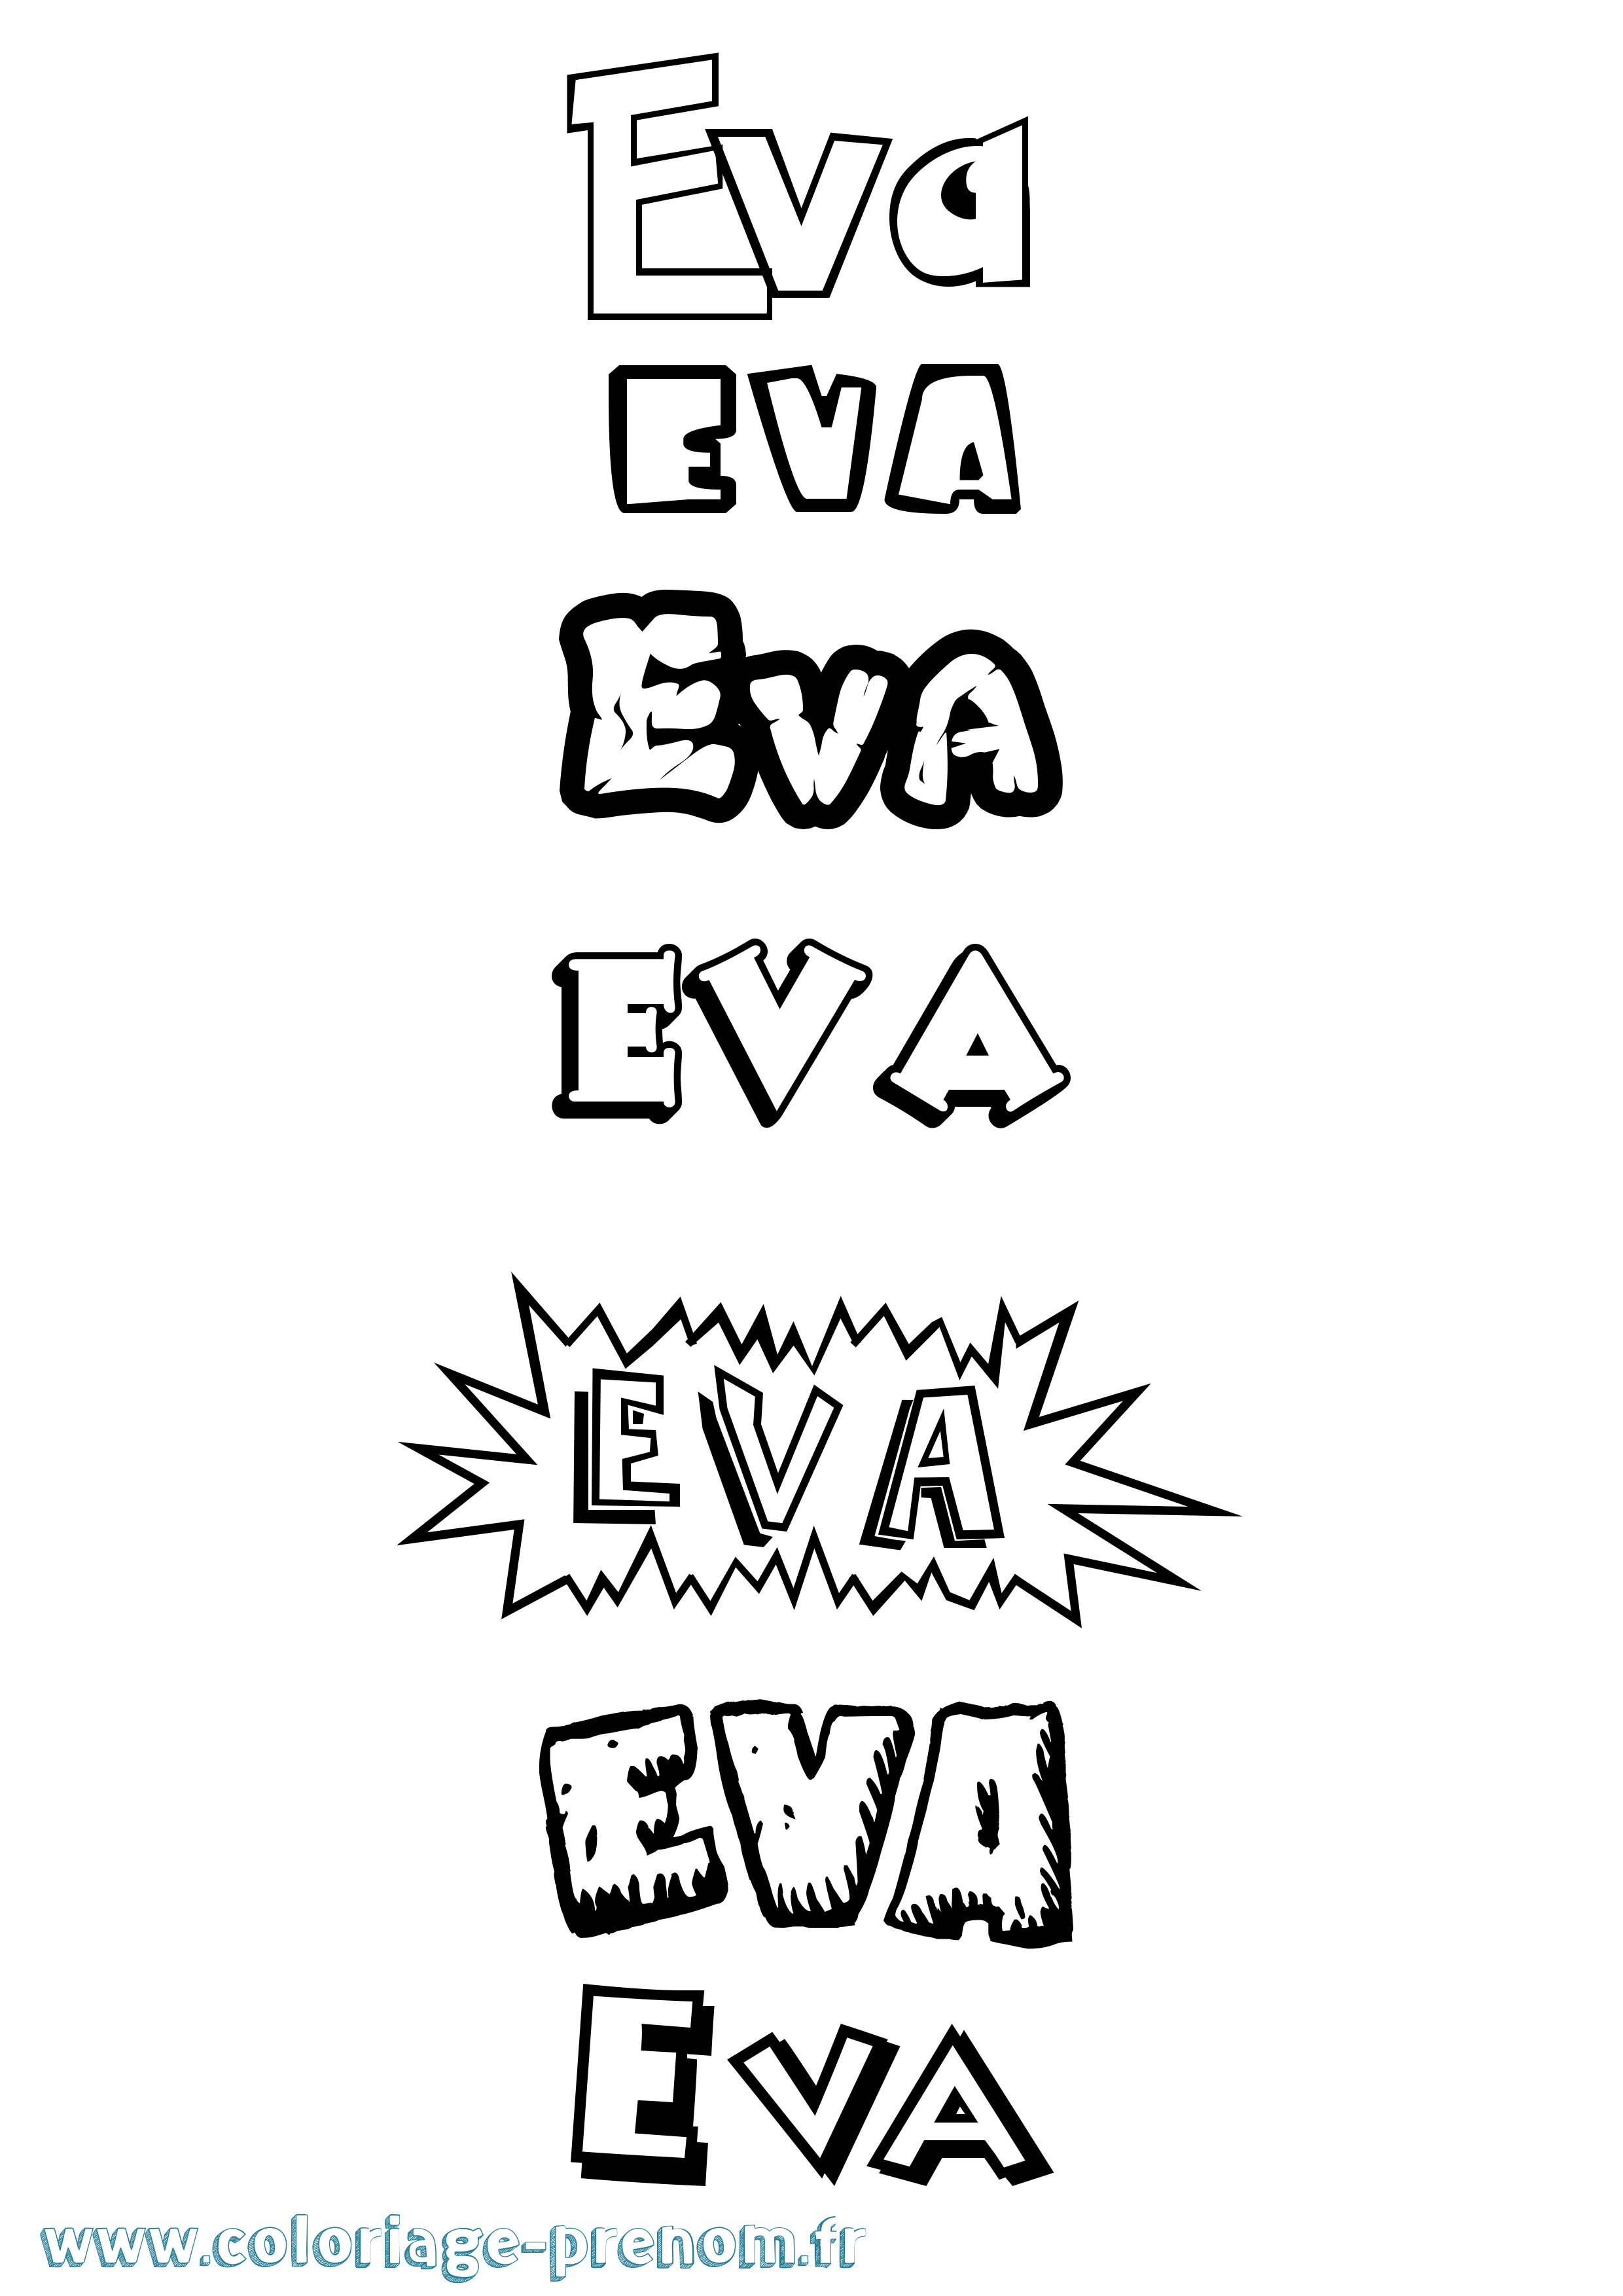 Coloriage du prénom Eva : à Imprimer ou Télécharger facilement